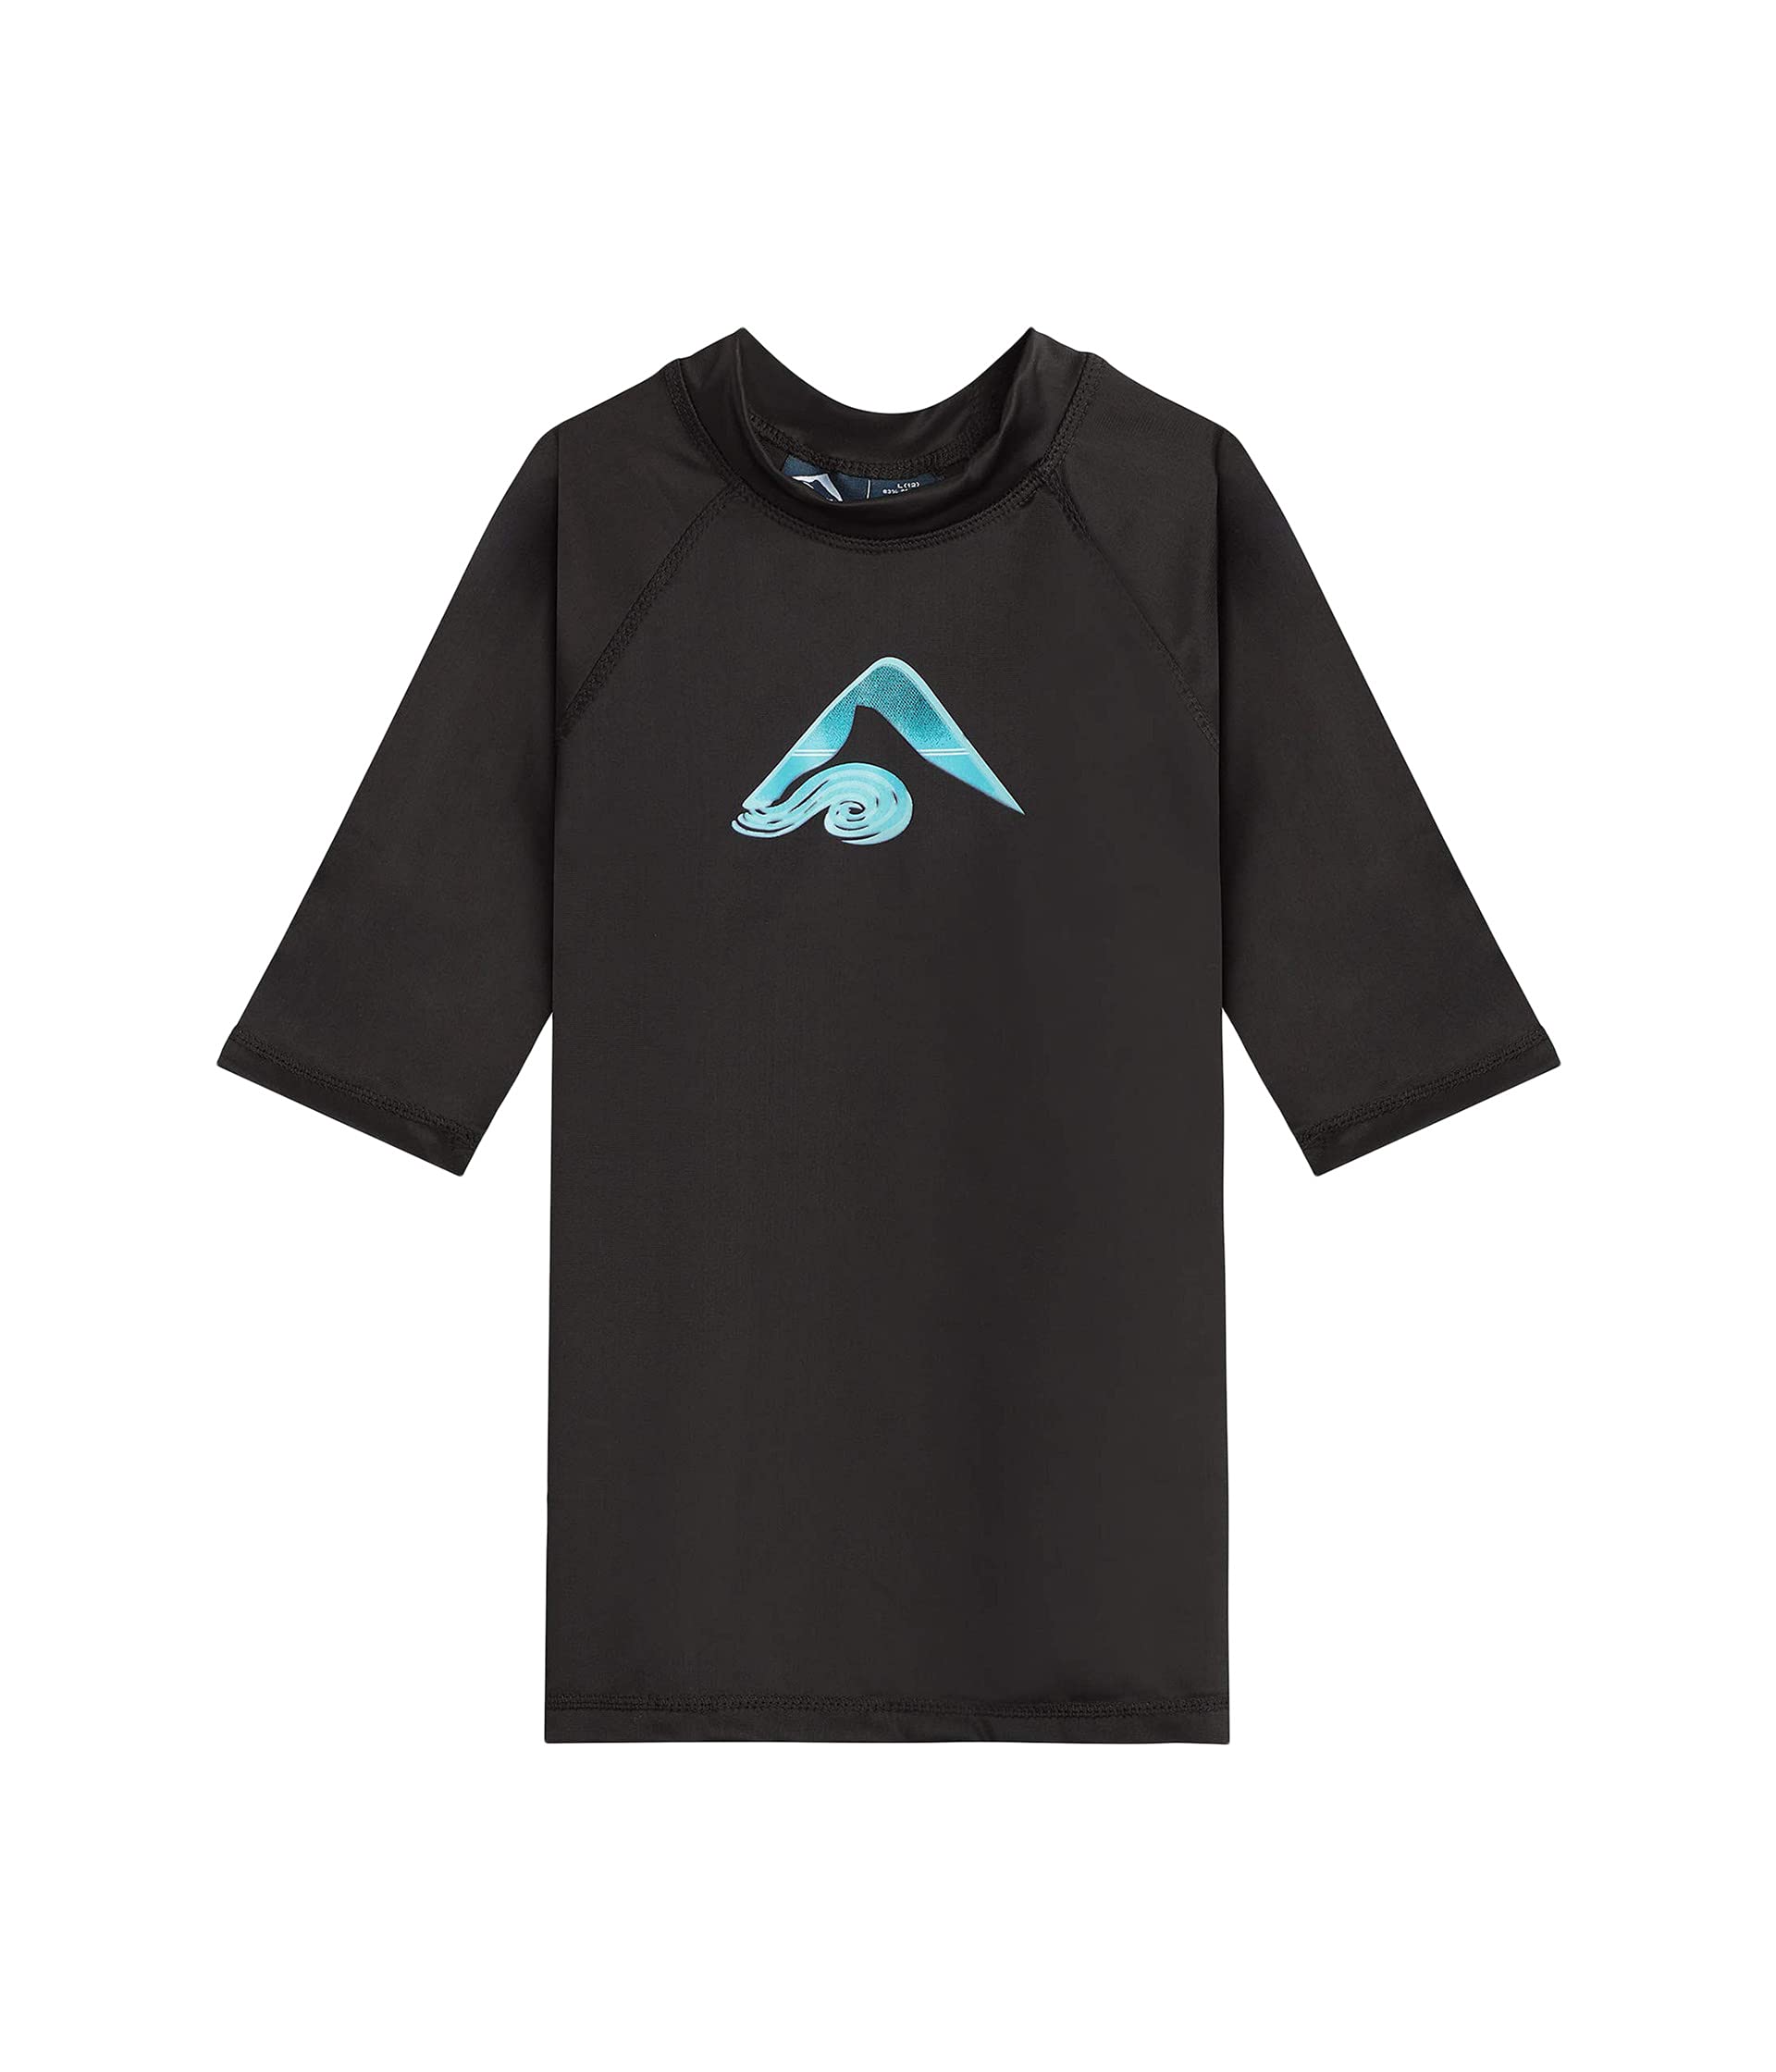 Плавательная рубашка с защитным рашгардом Paradise UPF 50+ (для малышей) Kanu Surf